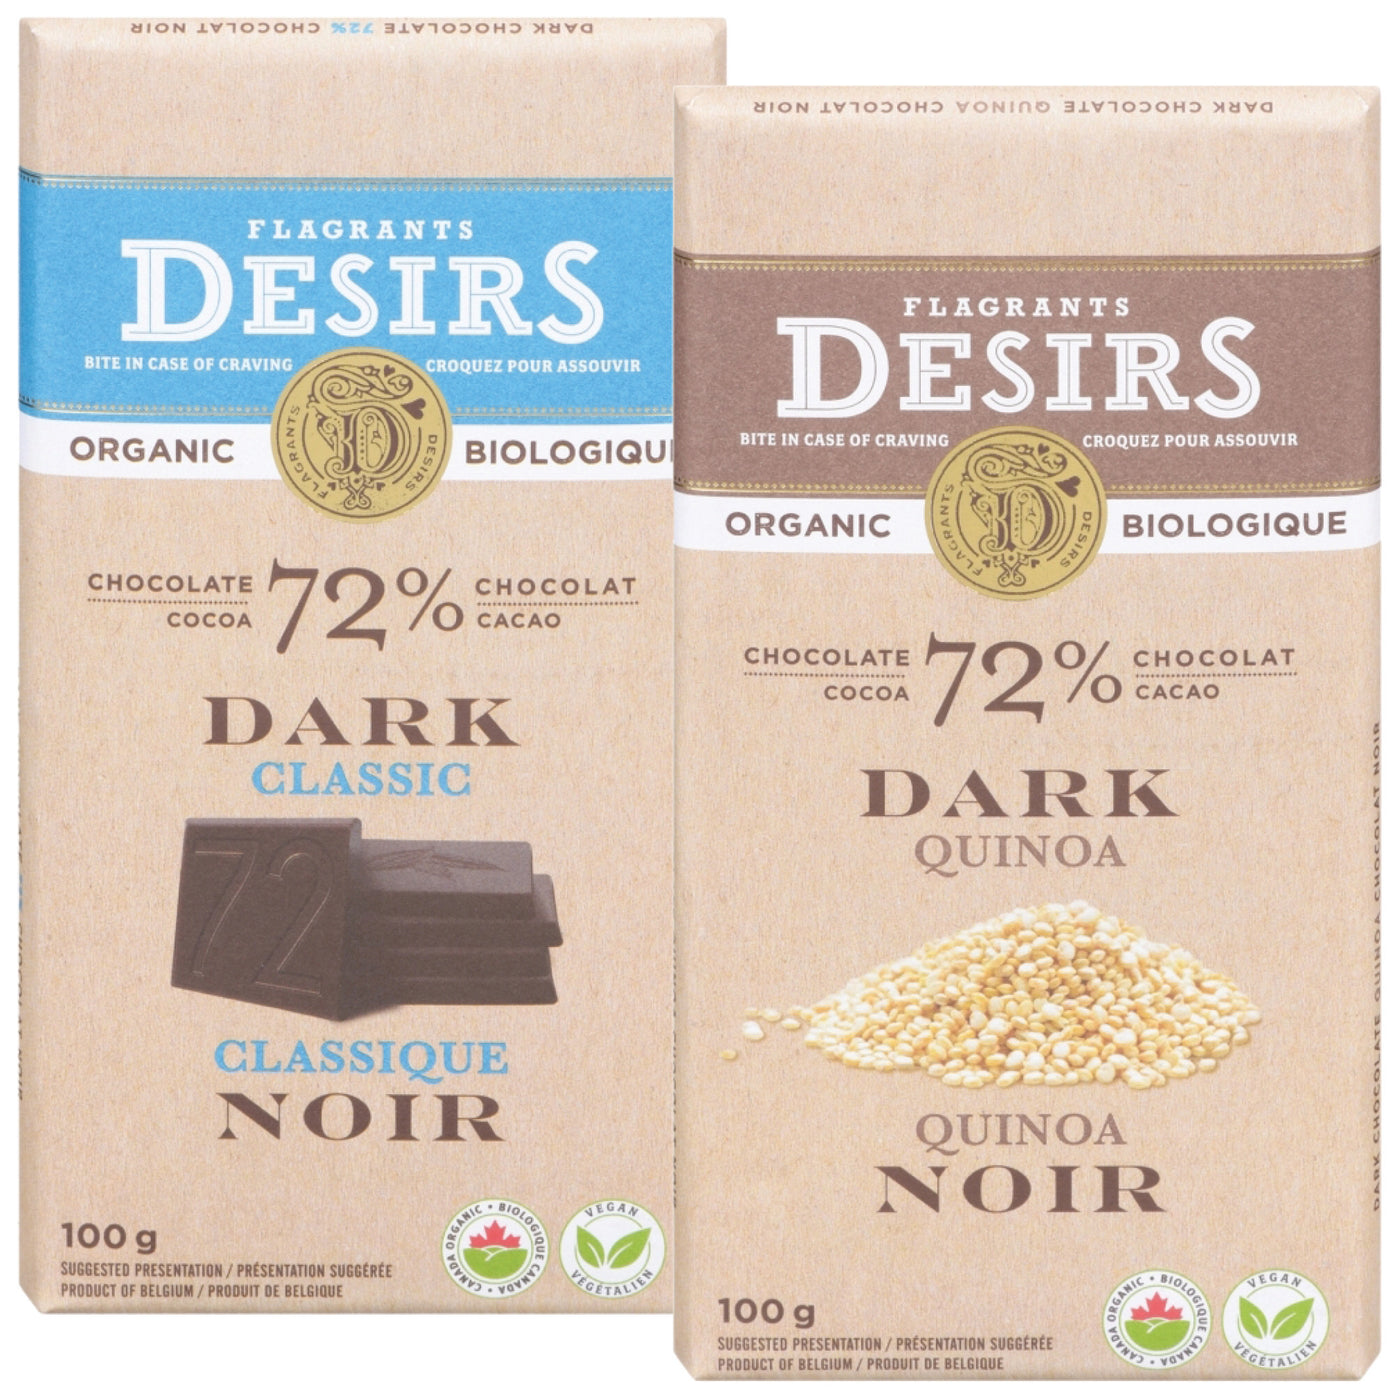 Organic Dark Chocolate